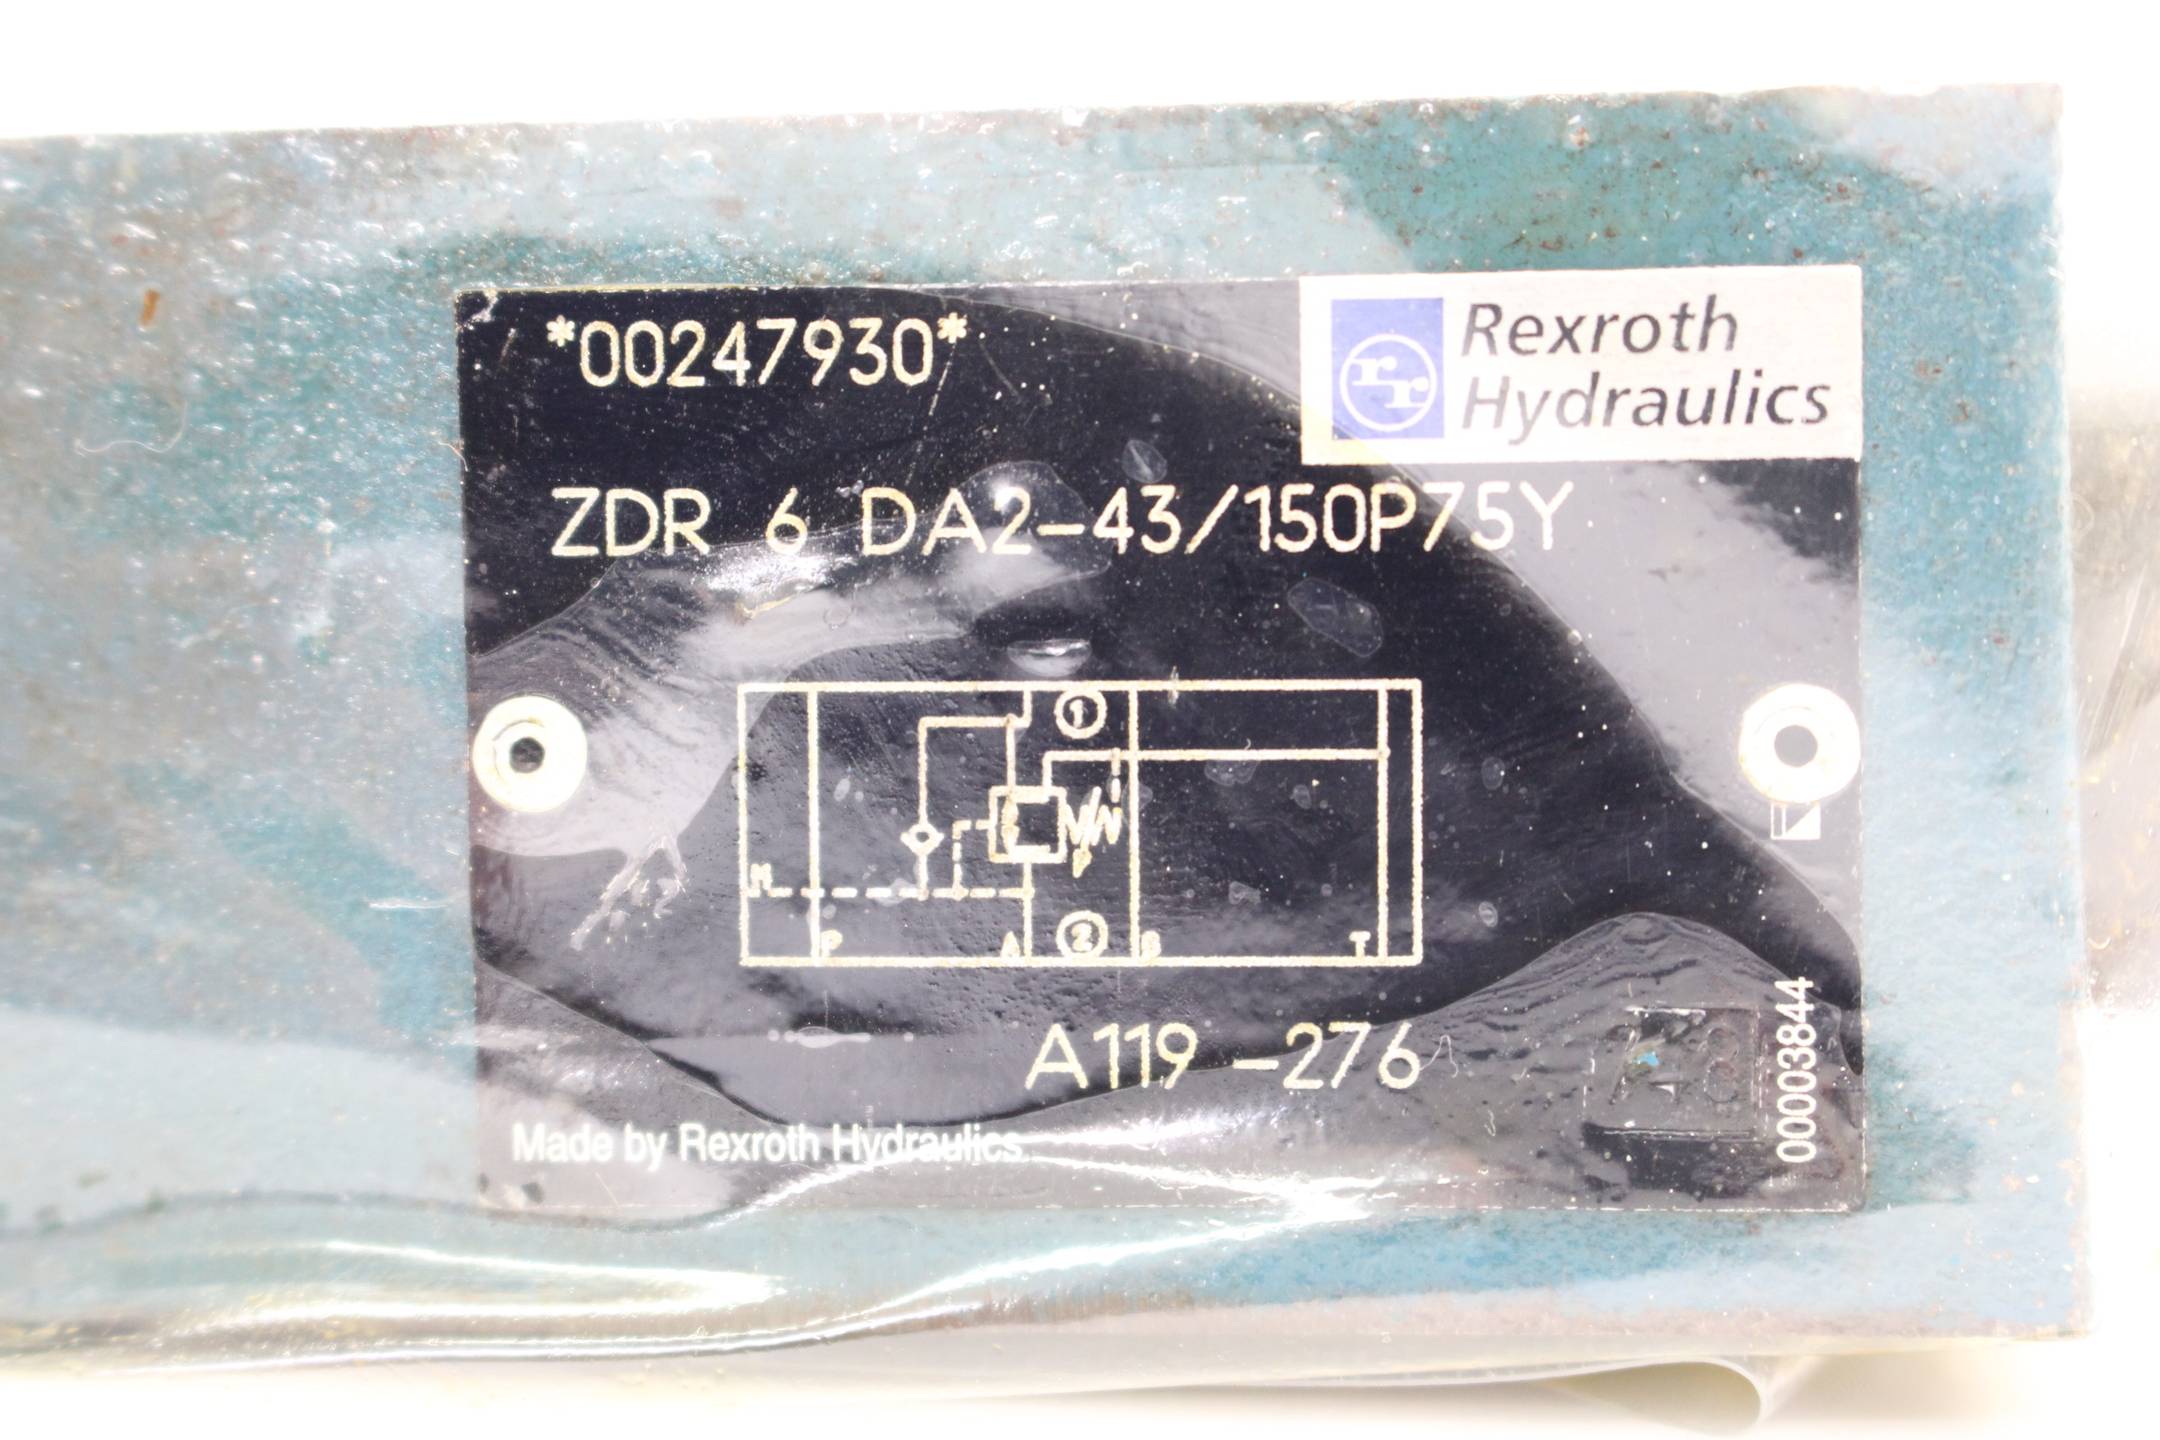 Rexroth Hydraulics Druckminderer ZDR 6 DA2-43/150P75Y ( 00247930 )